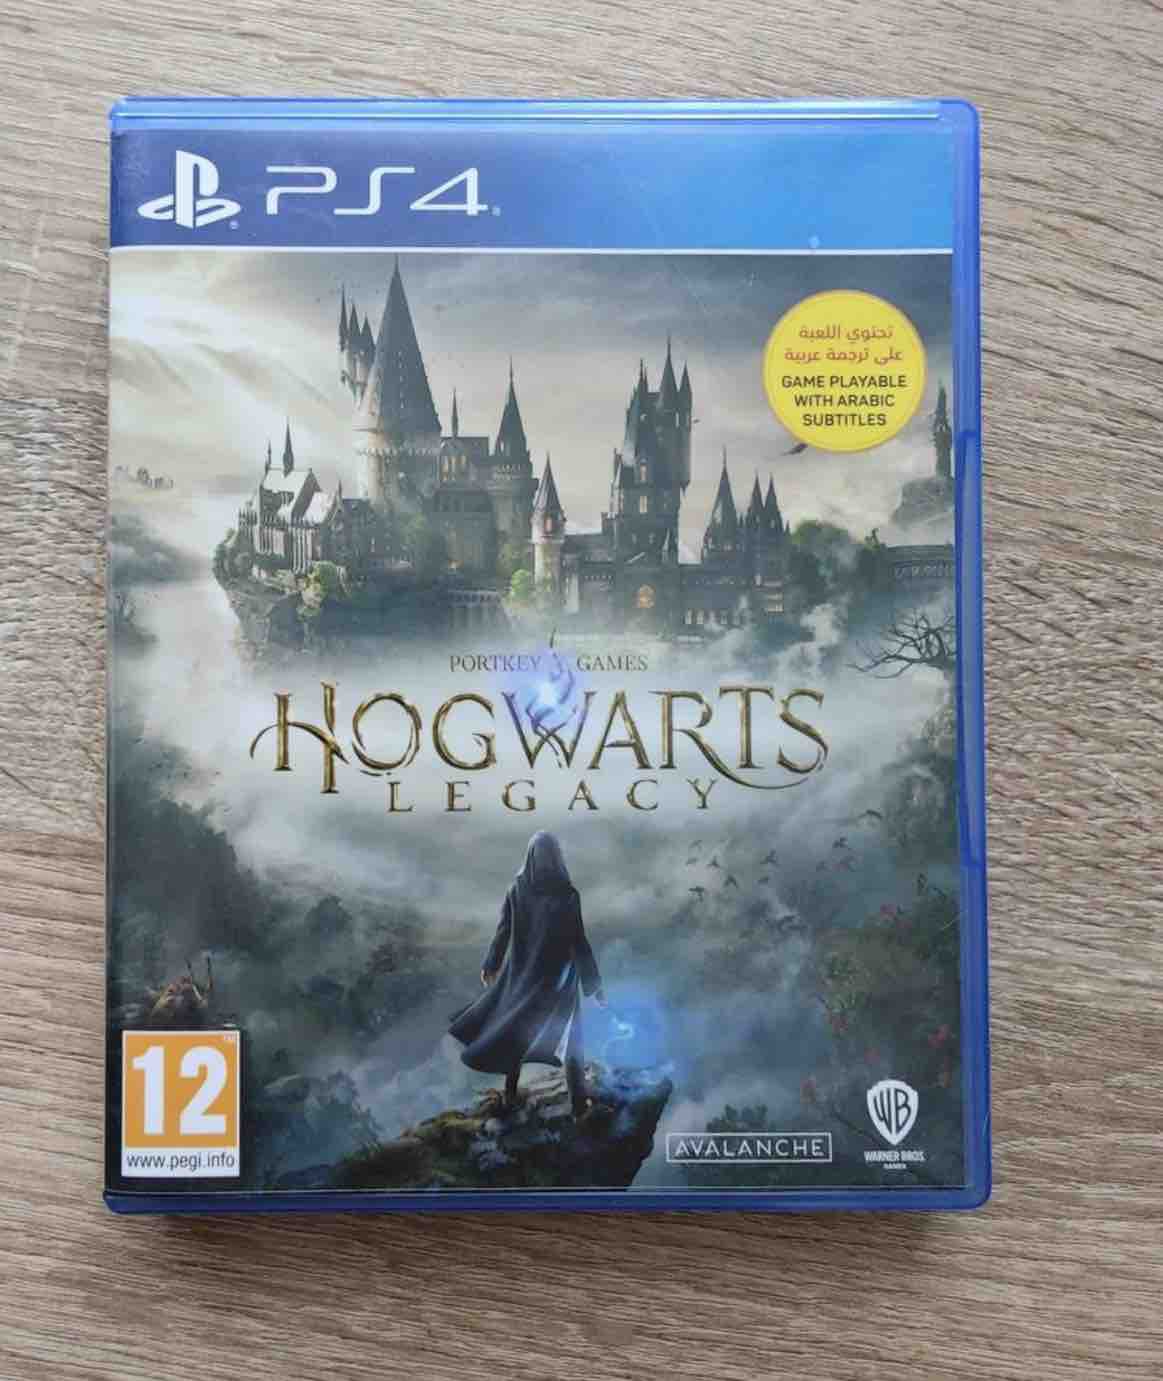 Игра Hogwarts Legacy (PS5) (PlayStation 5, Русские субтитры